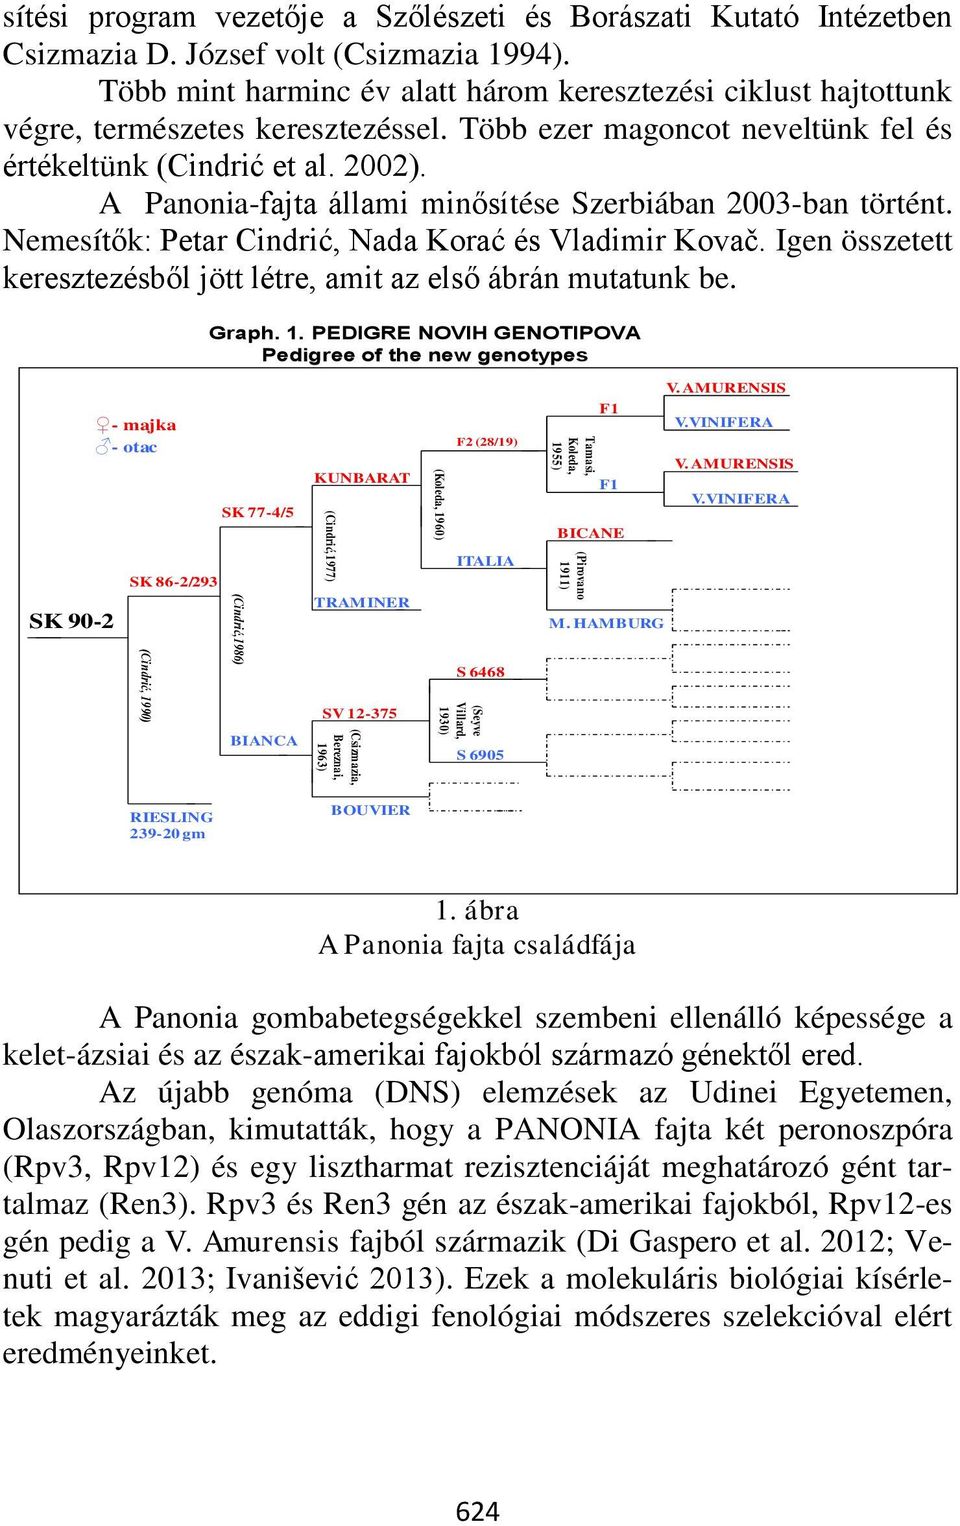 A Panonia-fajta állami minősítése Szerbiában 2003-ban történt. Nemesítők: Petar Cindrić, Nada Korać és Vladimir Kovač. Igen összetett keresztezésből jött létre, amit az első ábrán mutatunk be. Graph.